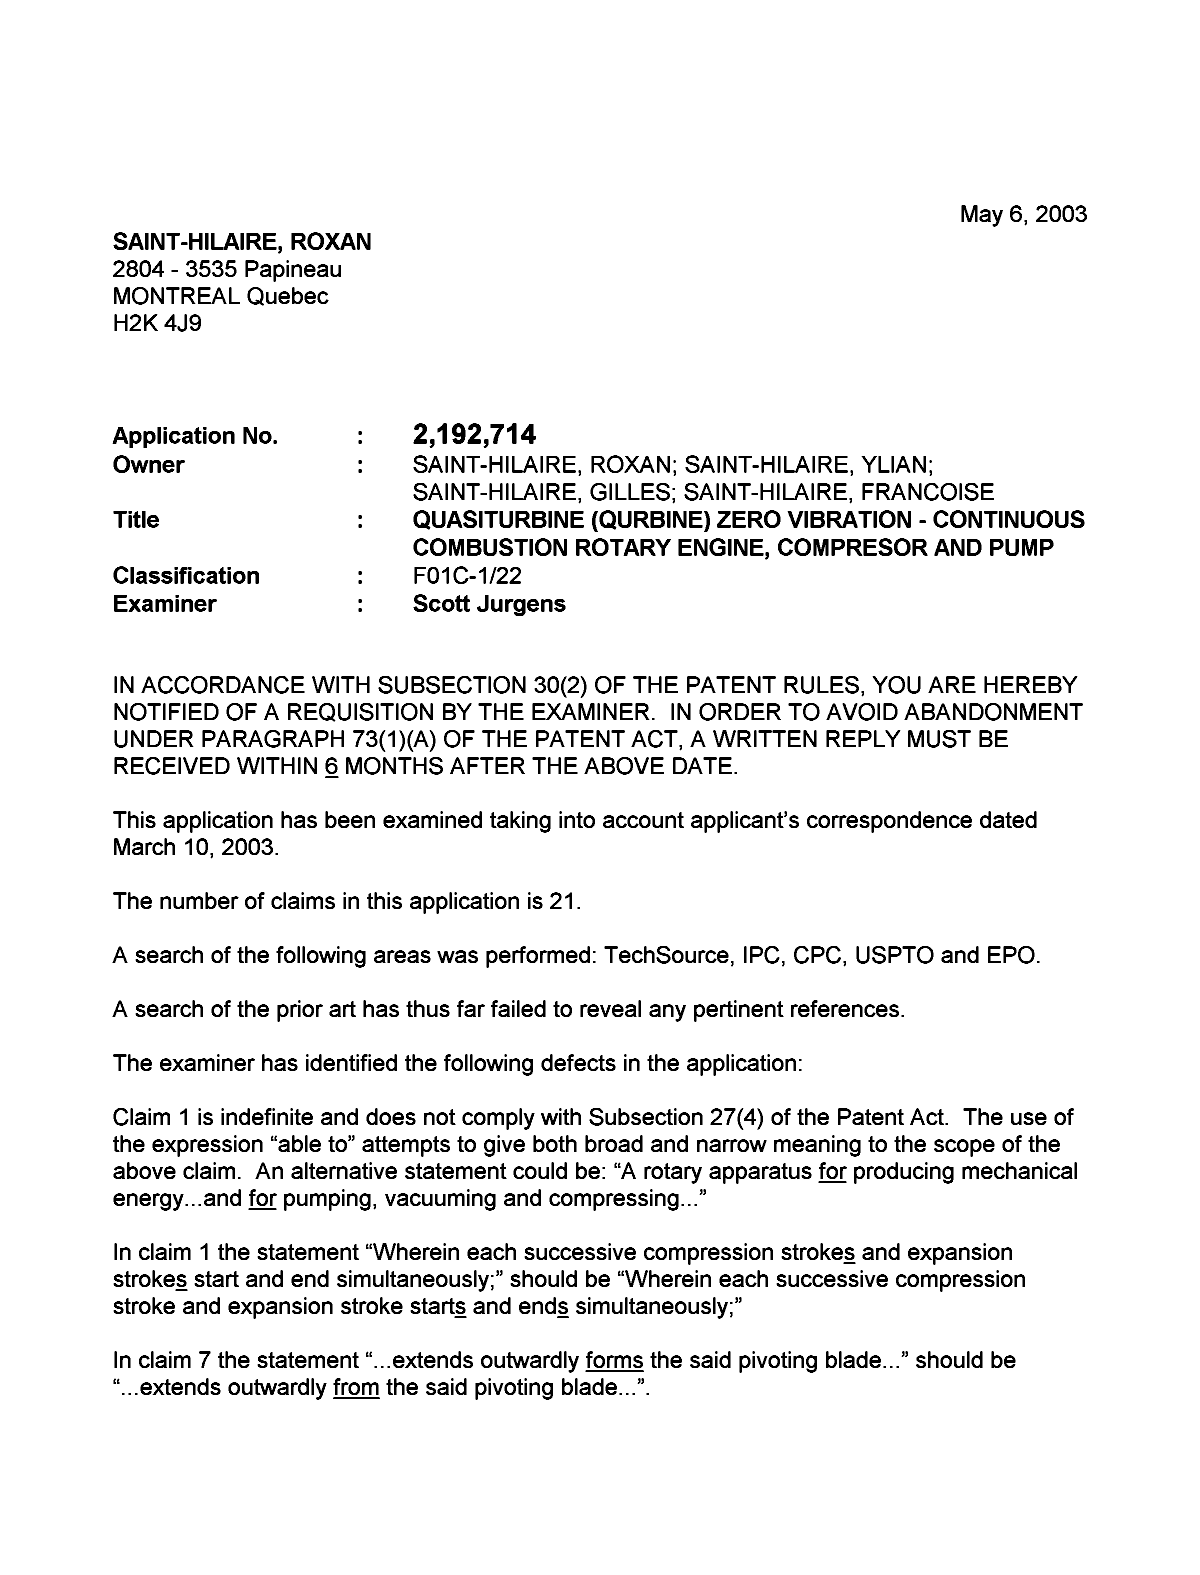 Document de brevet canadien 2192714. Poursuite-Amendment 20021206. Image 1 de 2